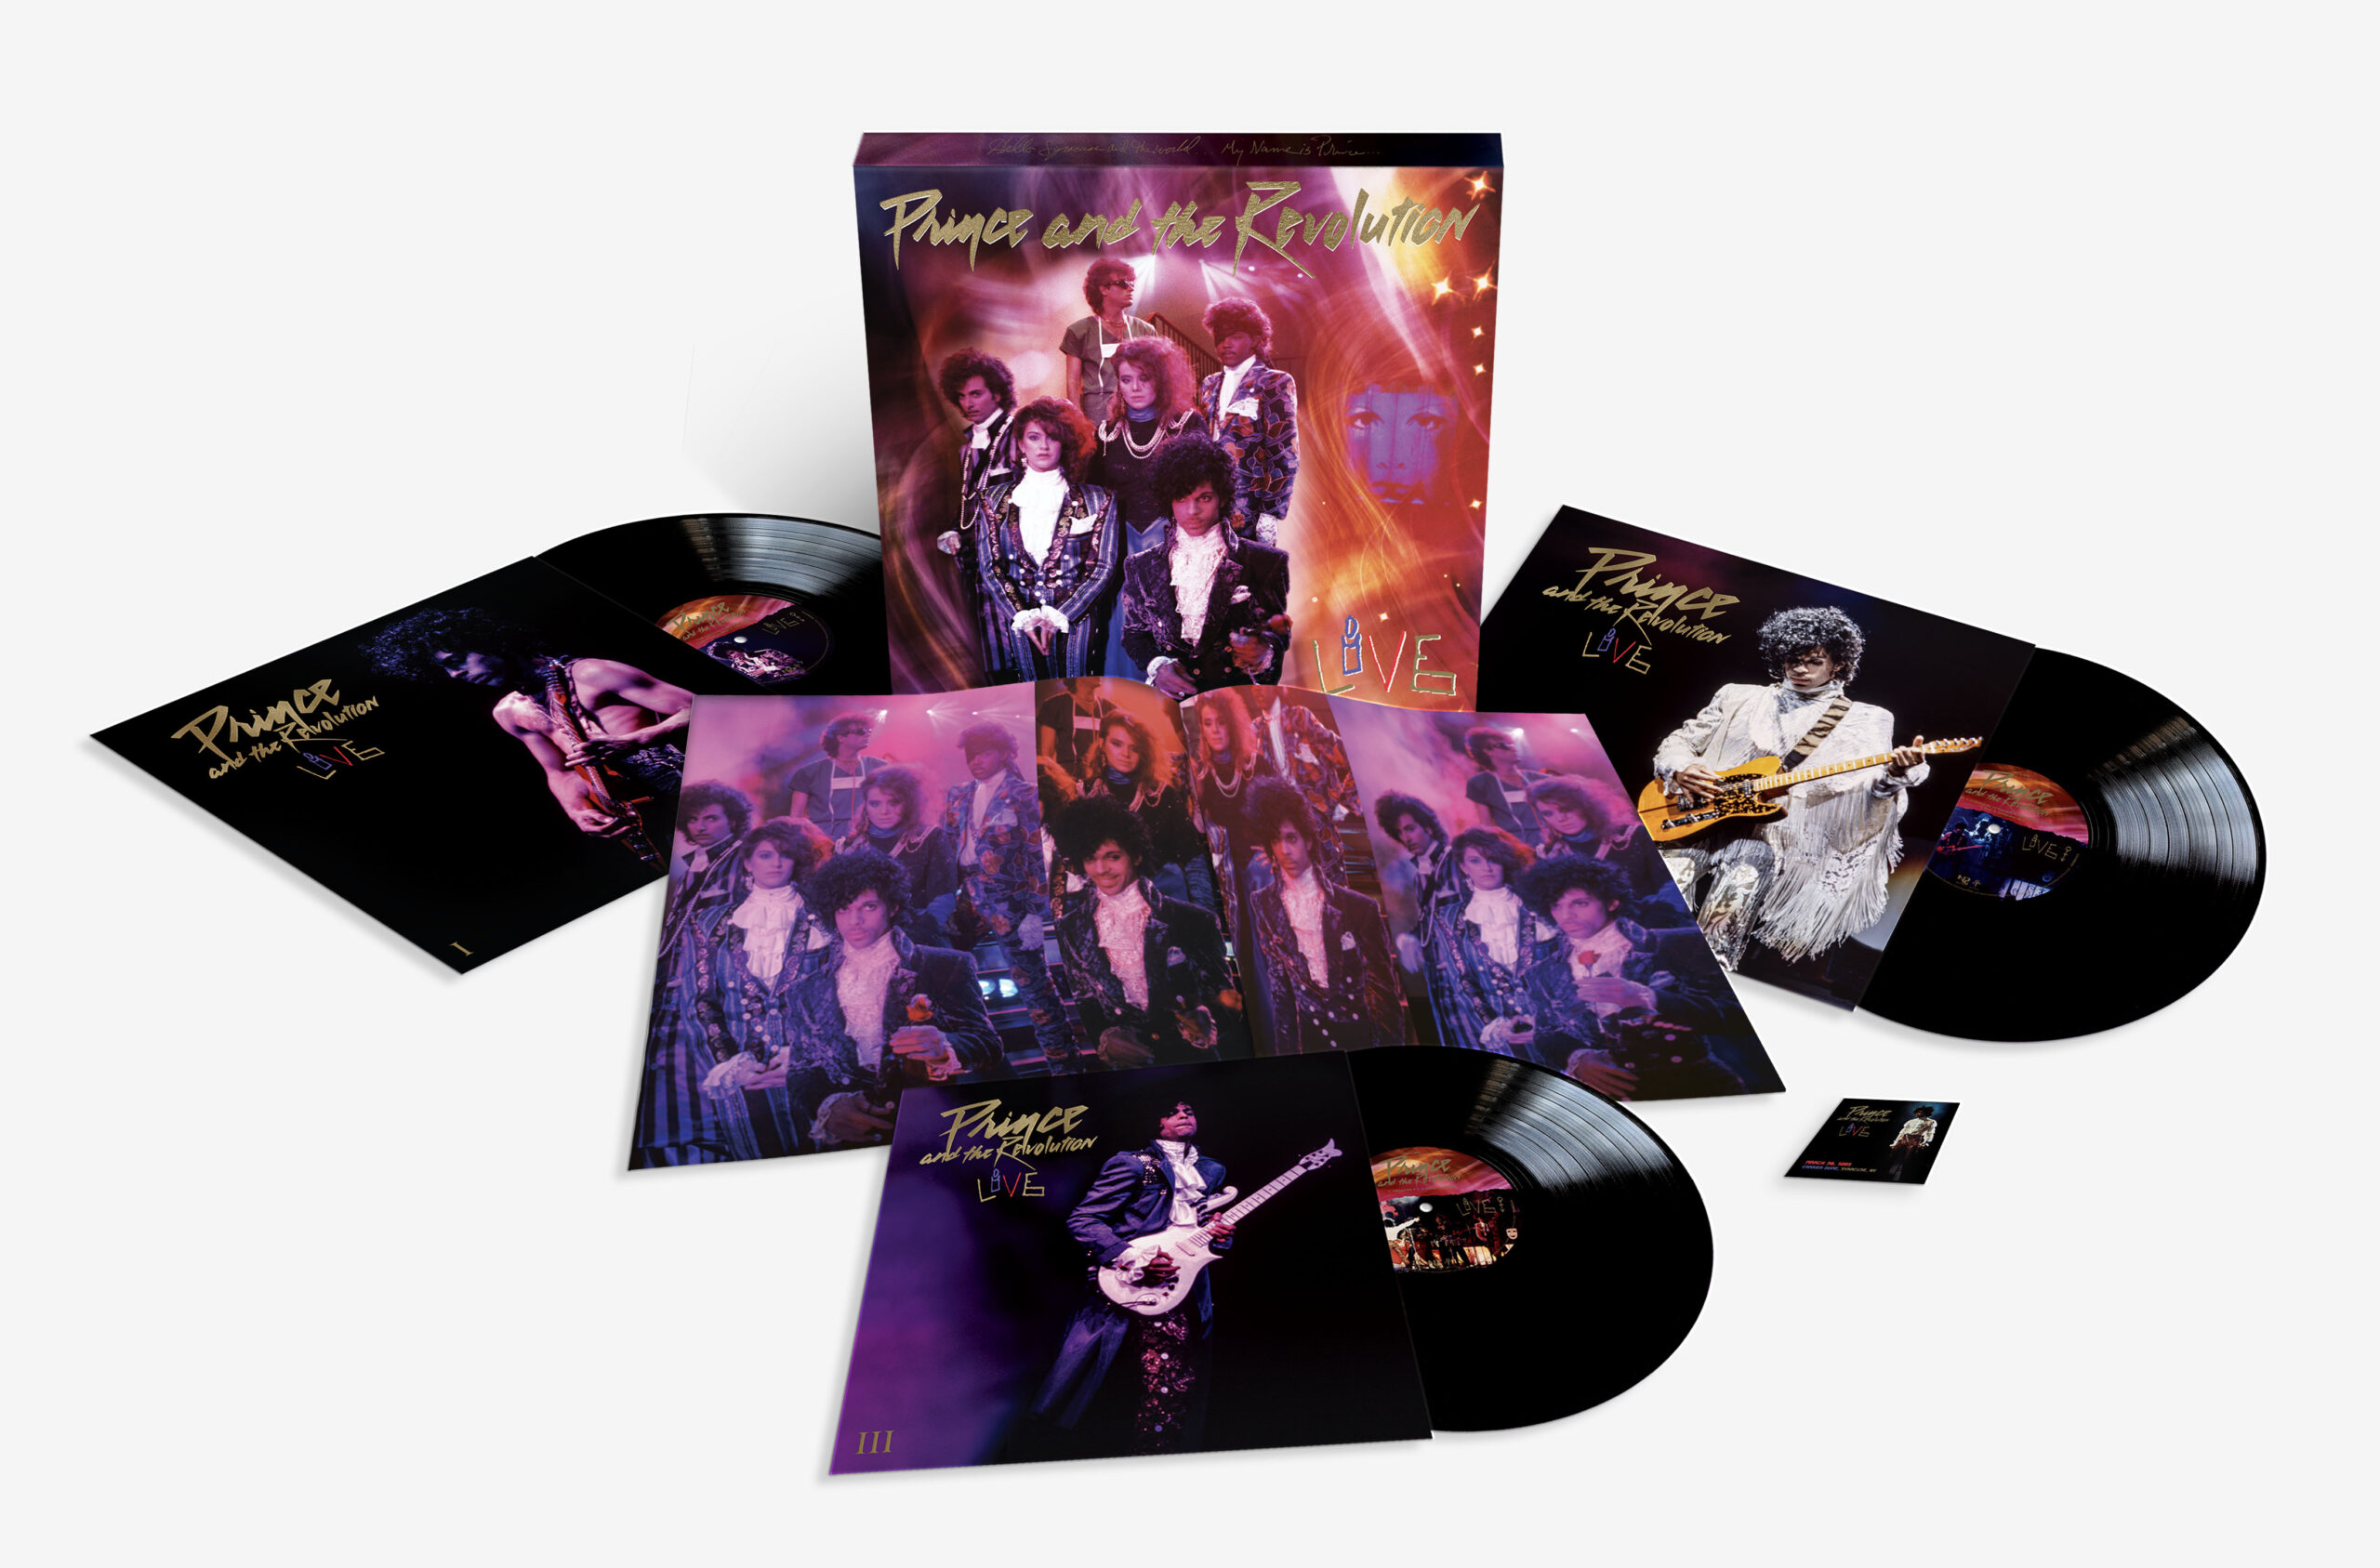 stof in de ogen gooien tactiek Verzoenen Prince and the Revolution Live / new official box set – SuperDeluxeEdition